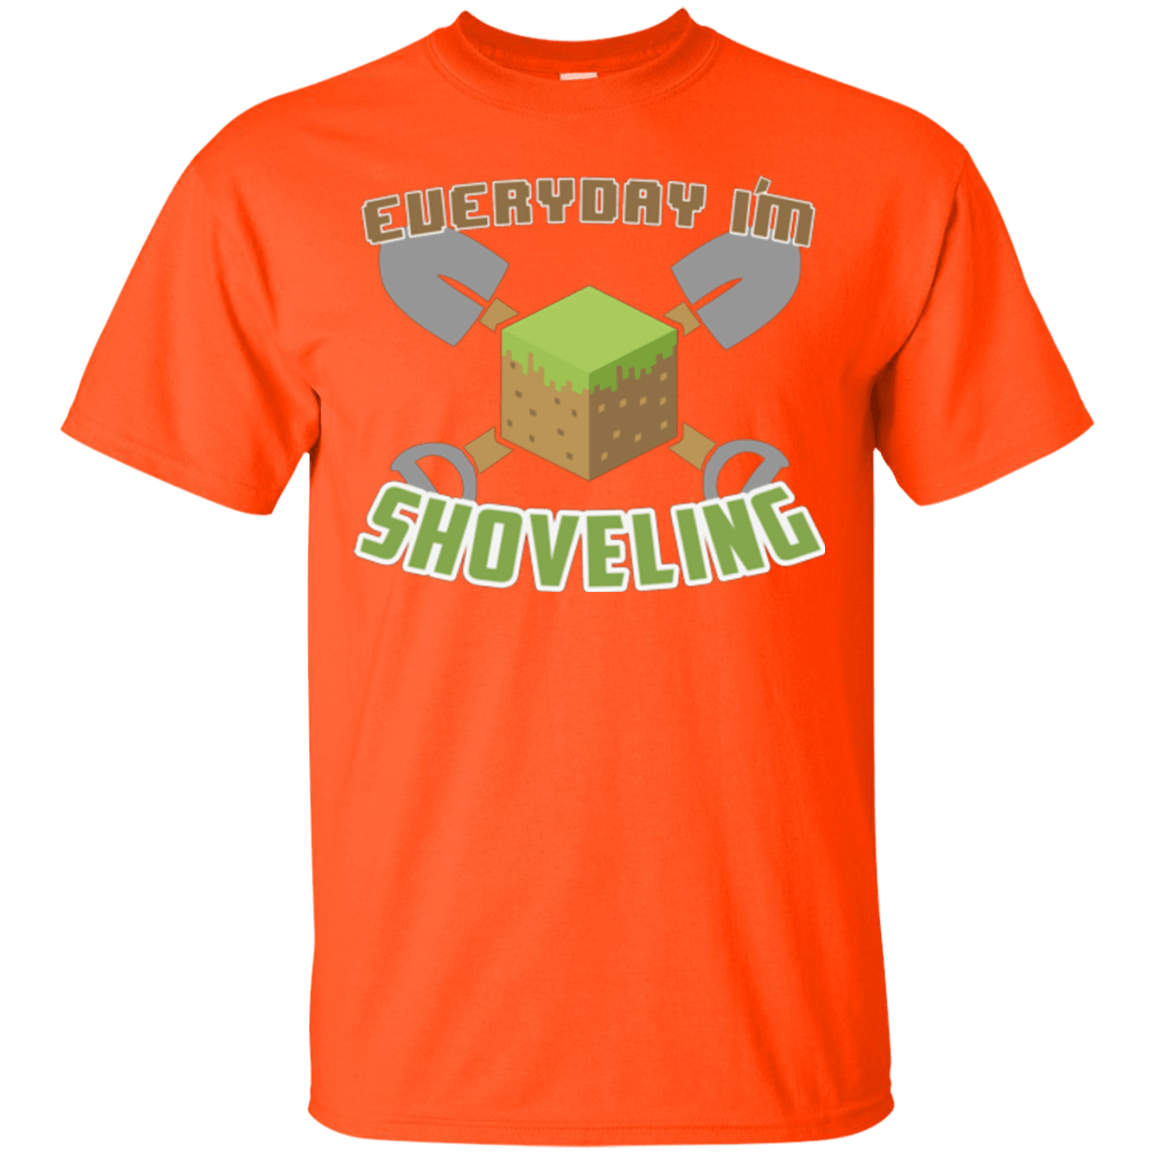 T-Shirts Orange / Small Everyday Shoveling T-Shirt